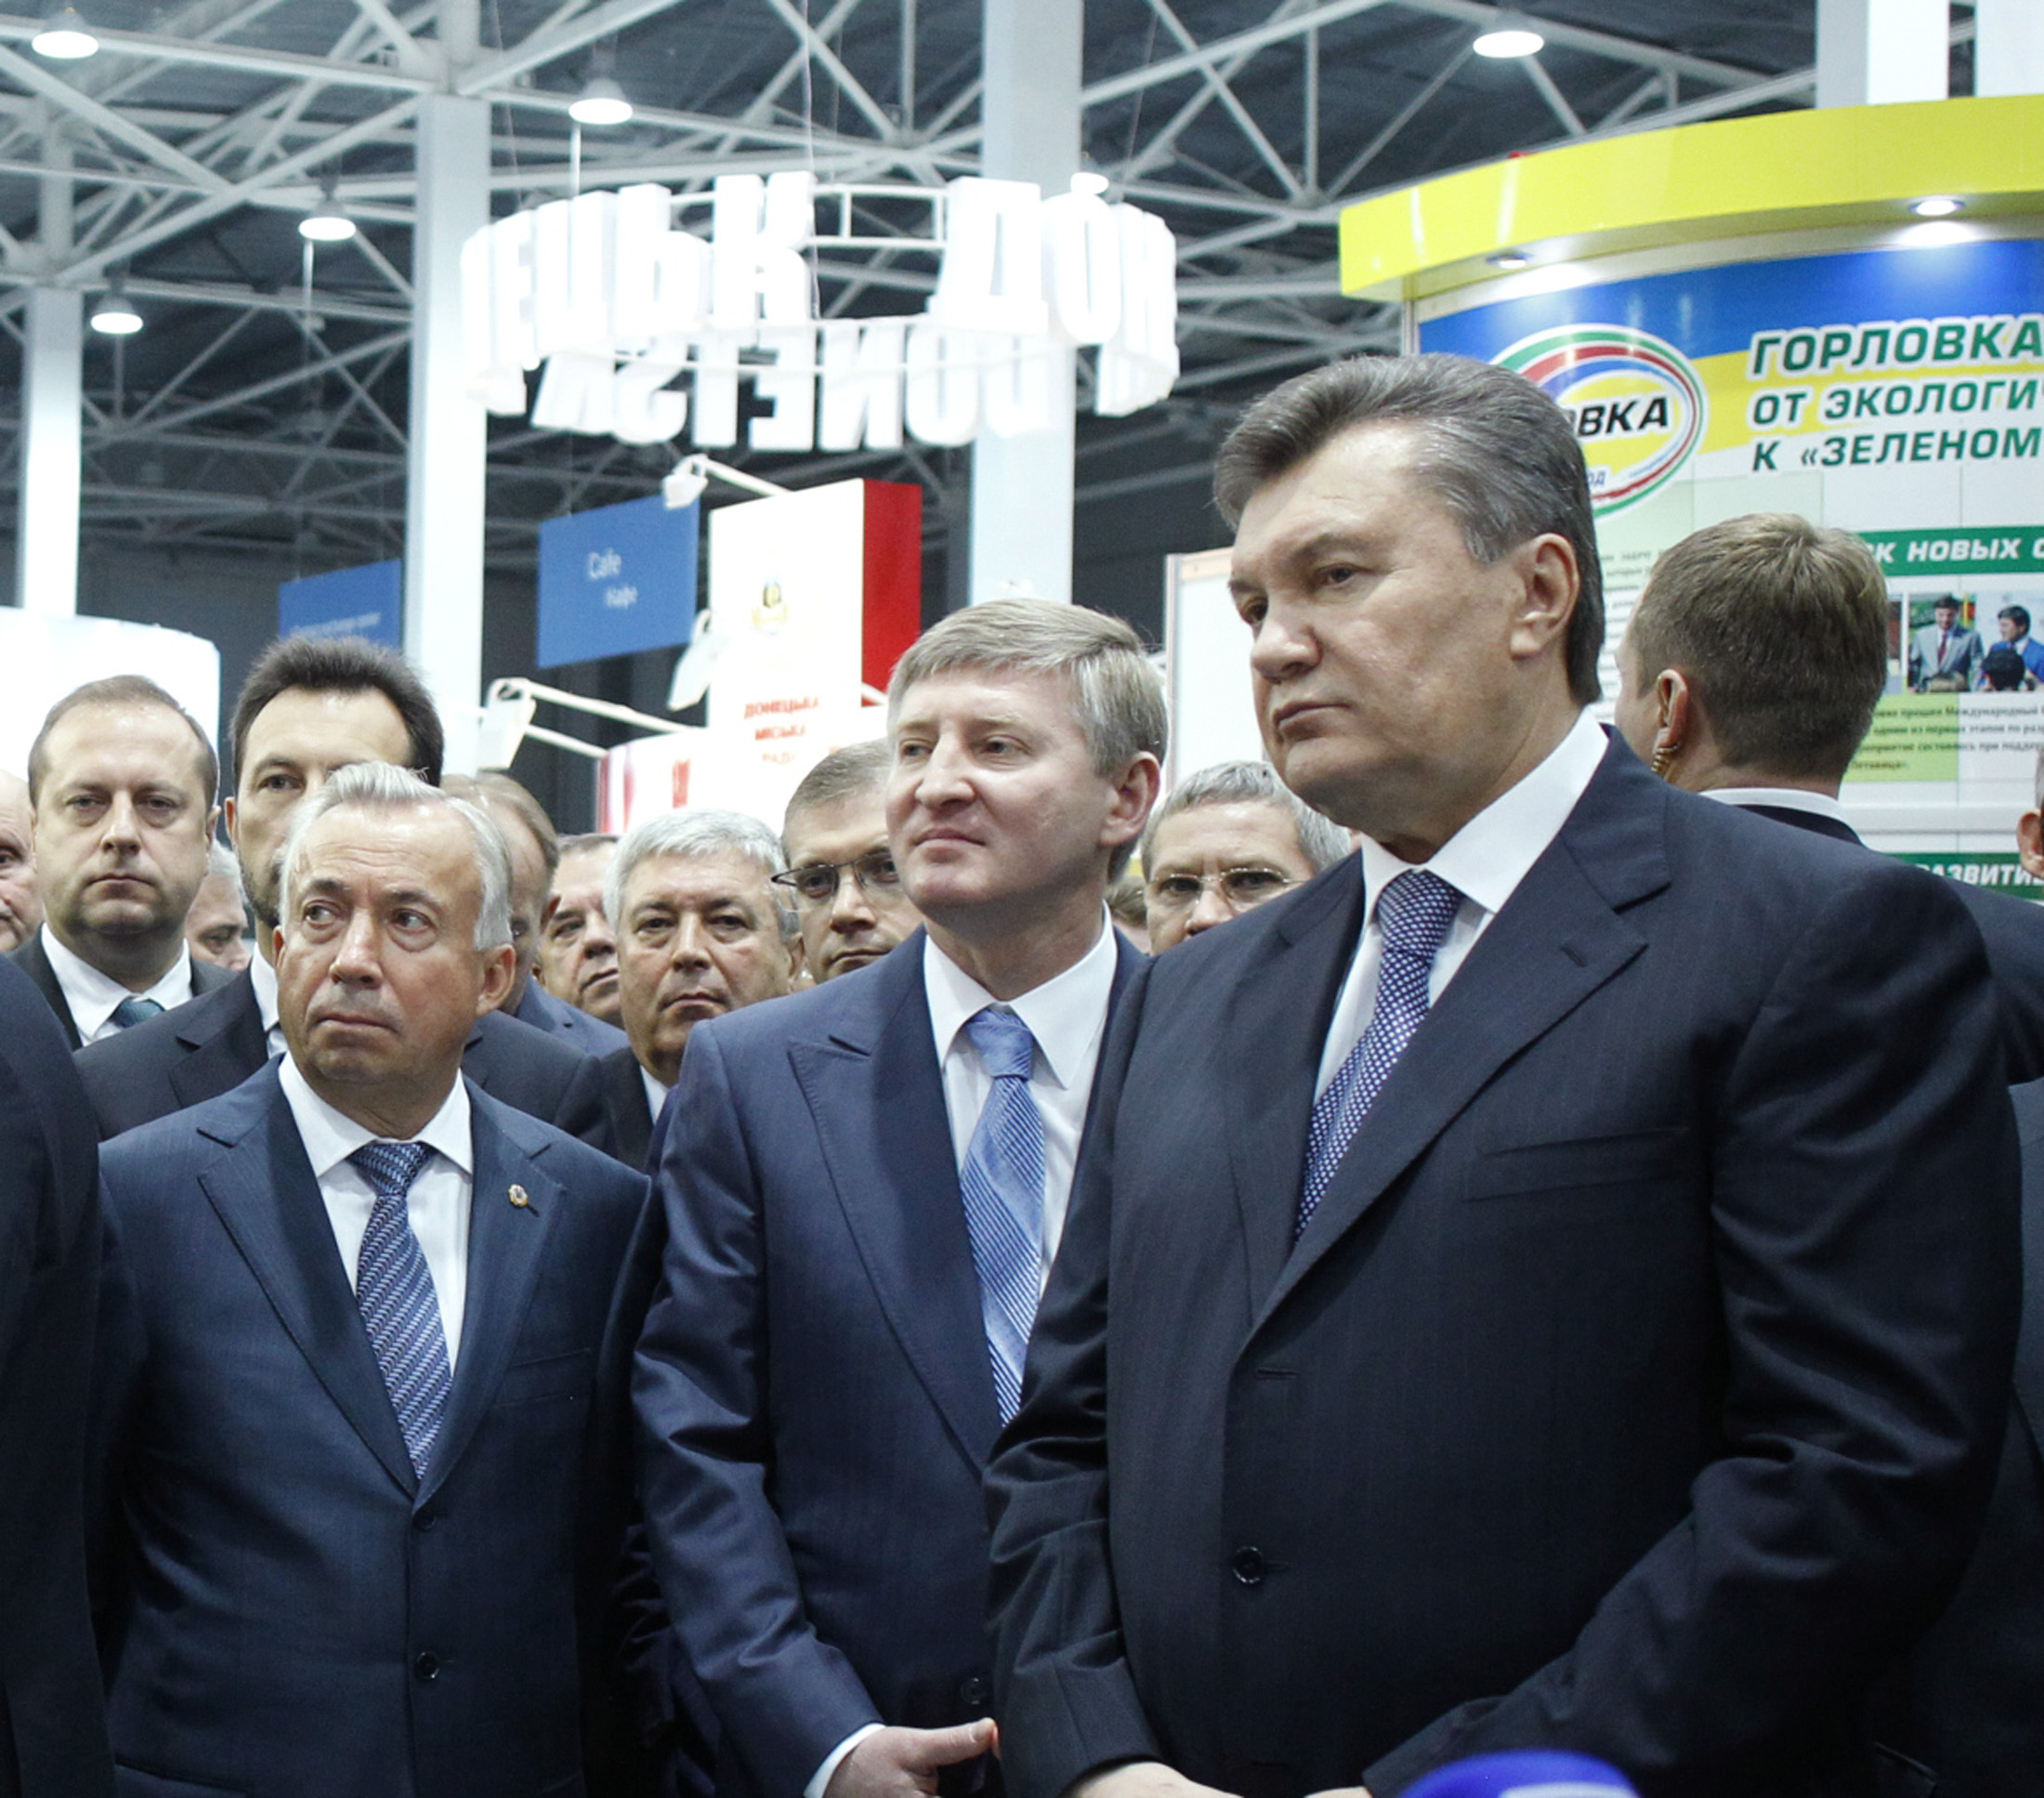 Глава держави вважає, що на Донбасі правильно розуміють суть реформ. Фото Aндрiя МOСIЄНКA